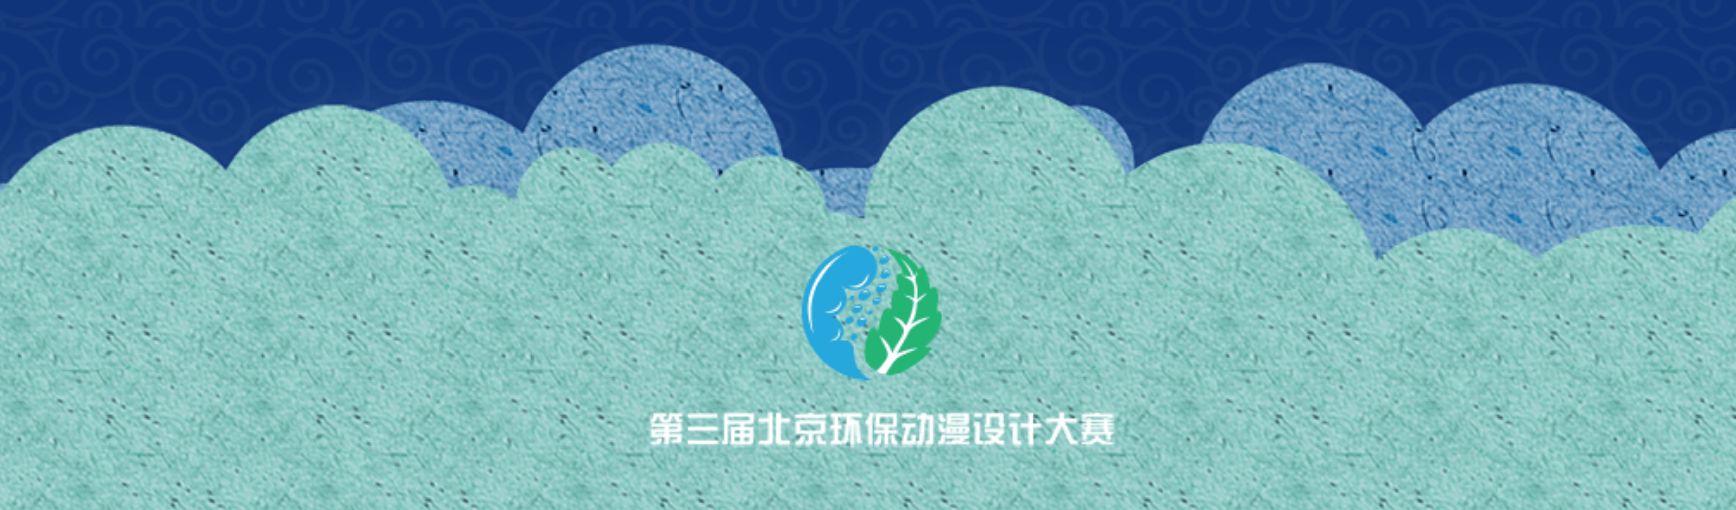 第三届北京环保动漫设计大赛2.jpg